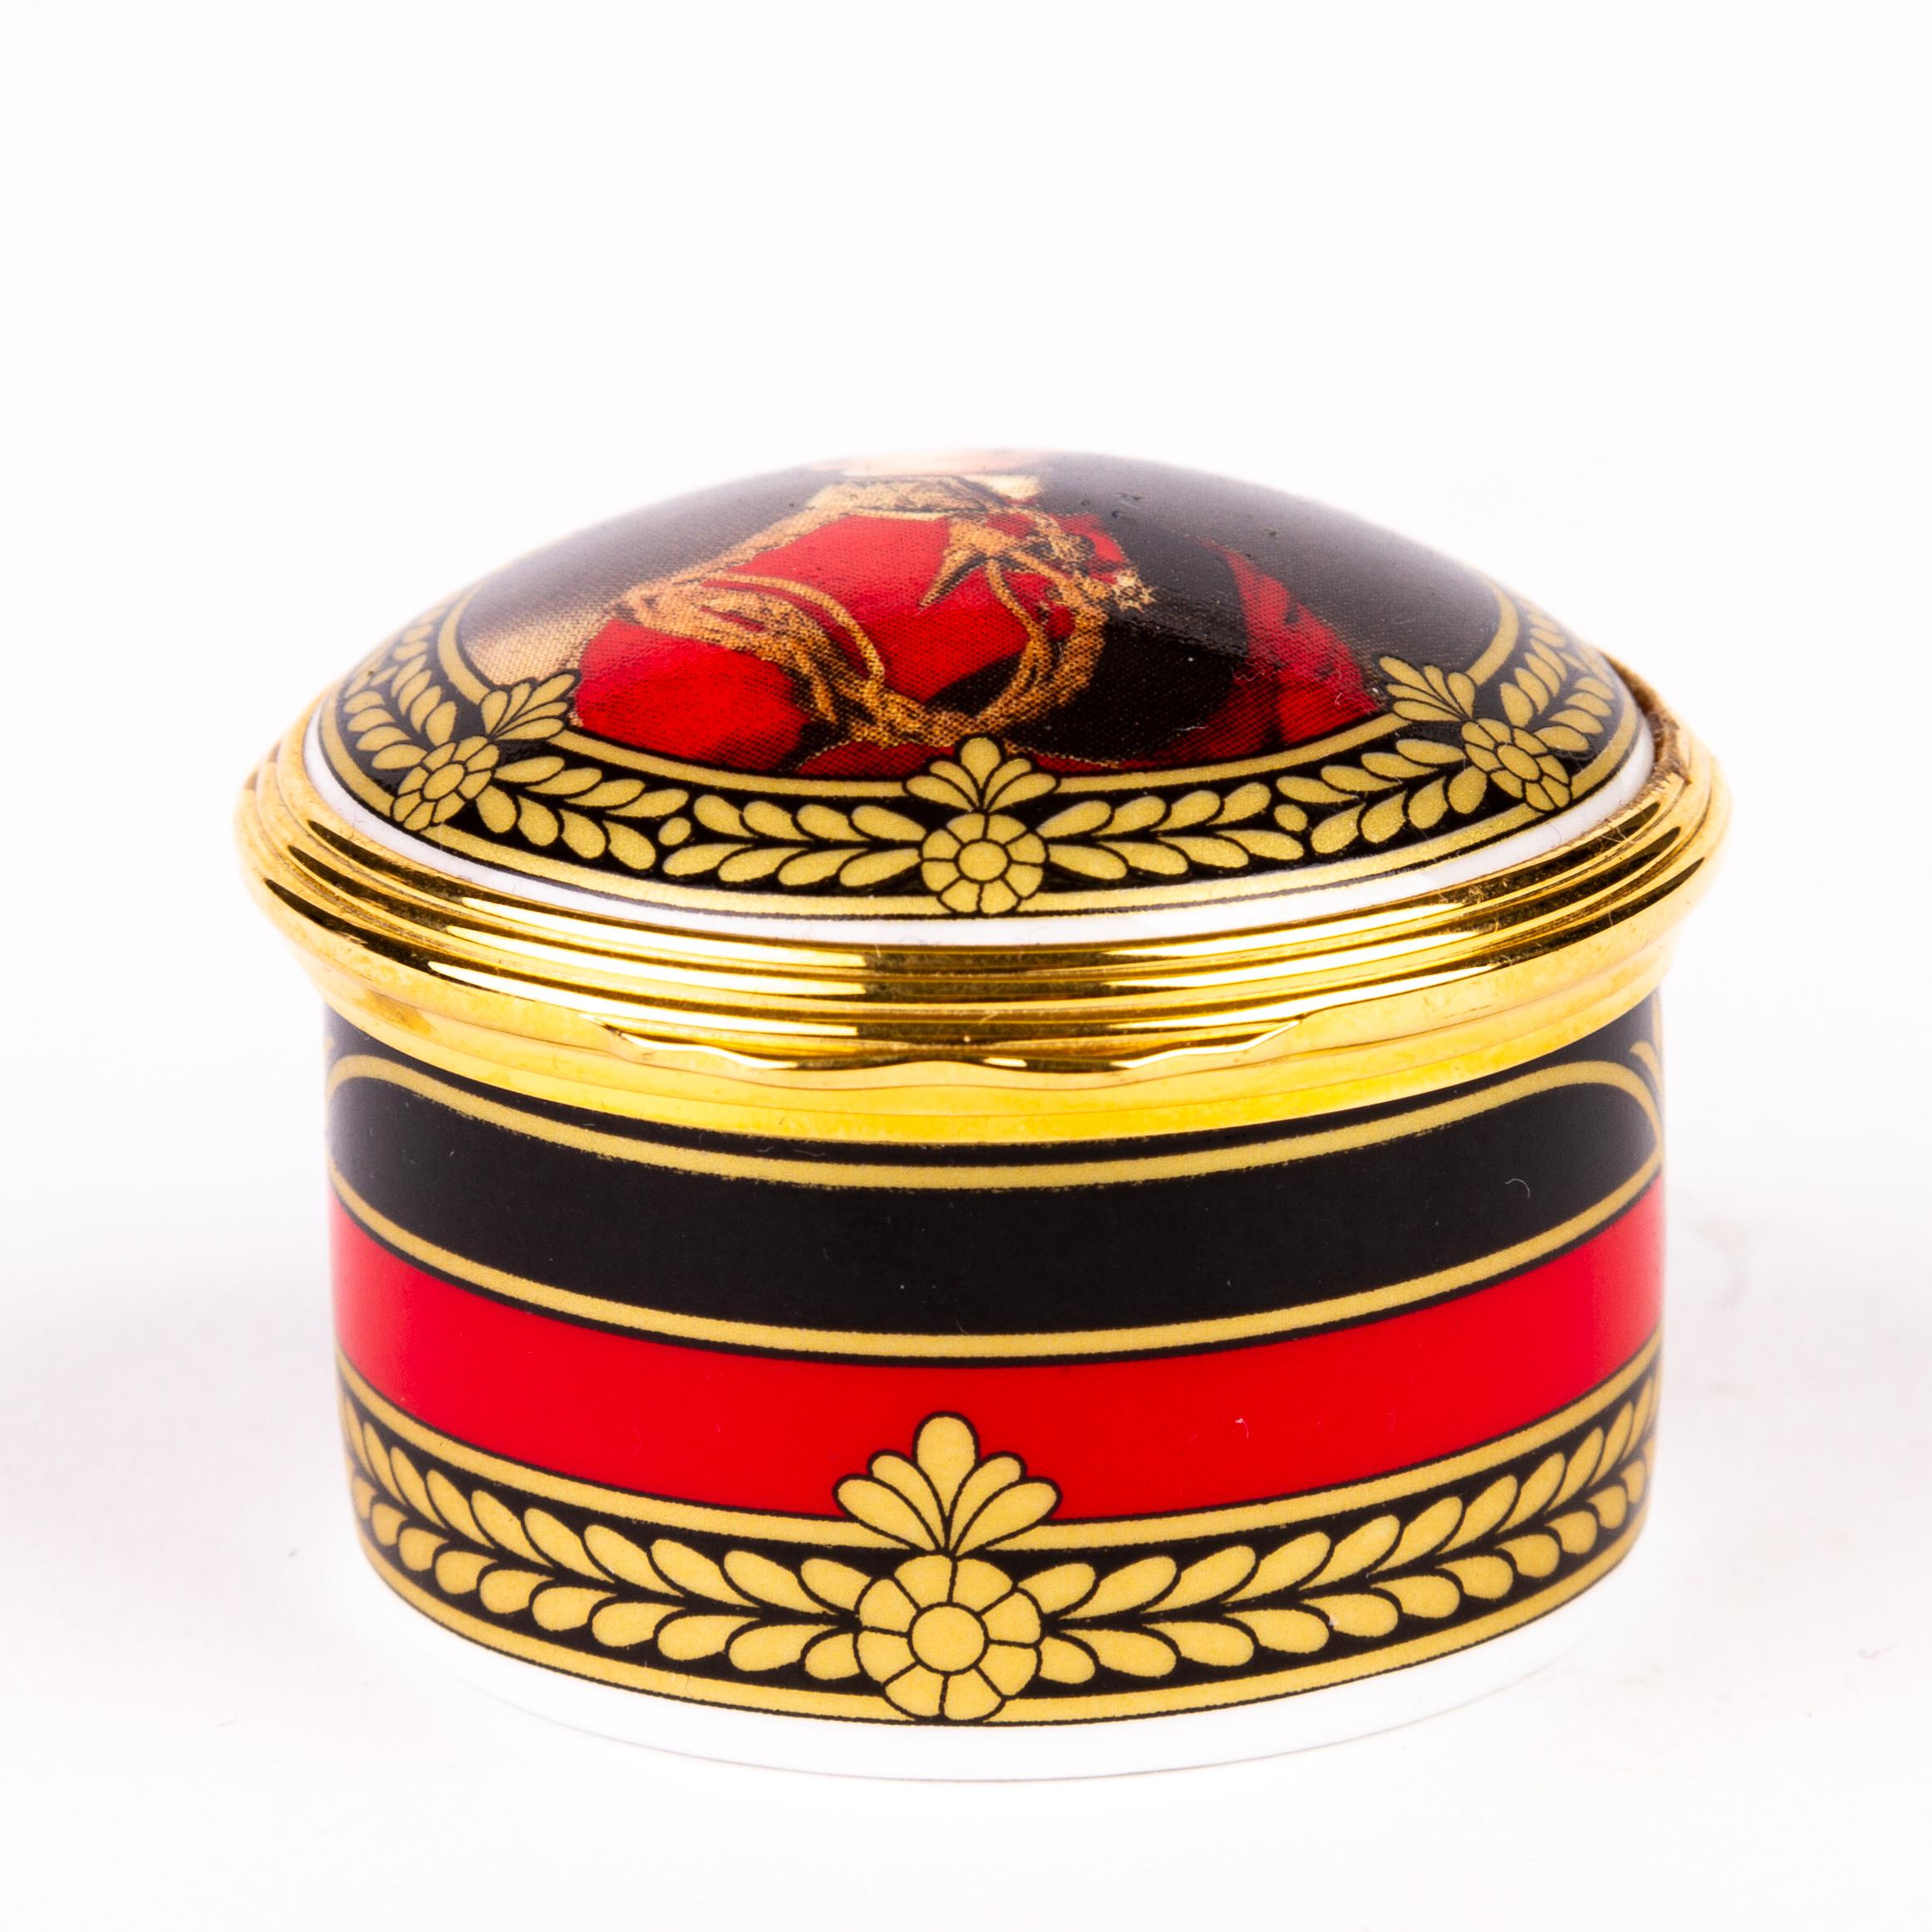 William Edwards Waterloo 24KT Gold Porcelain Pillbox 
We ship internationally. 
